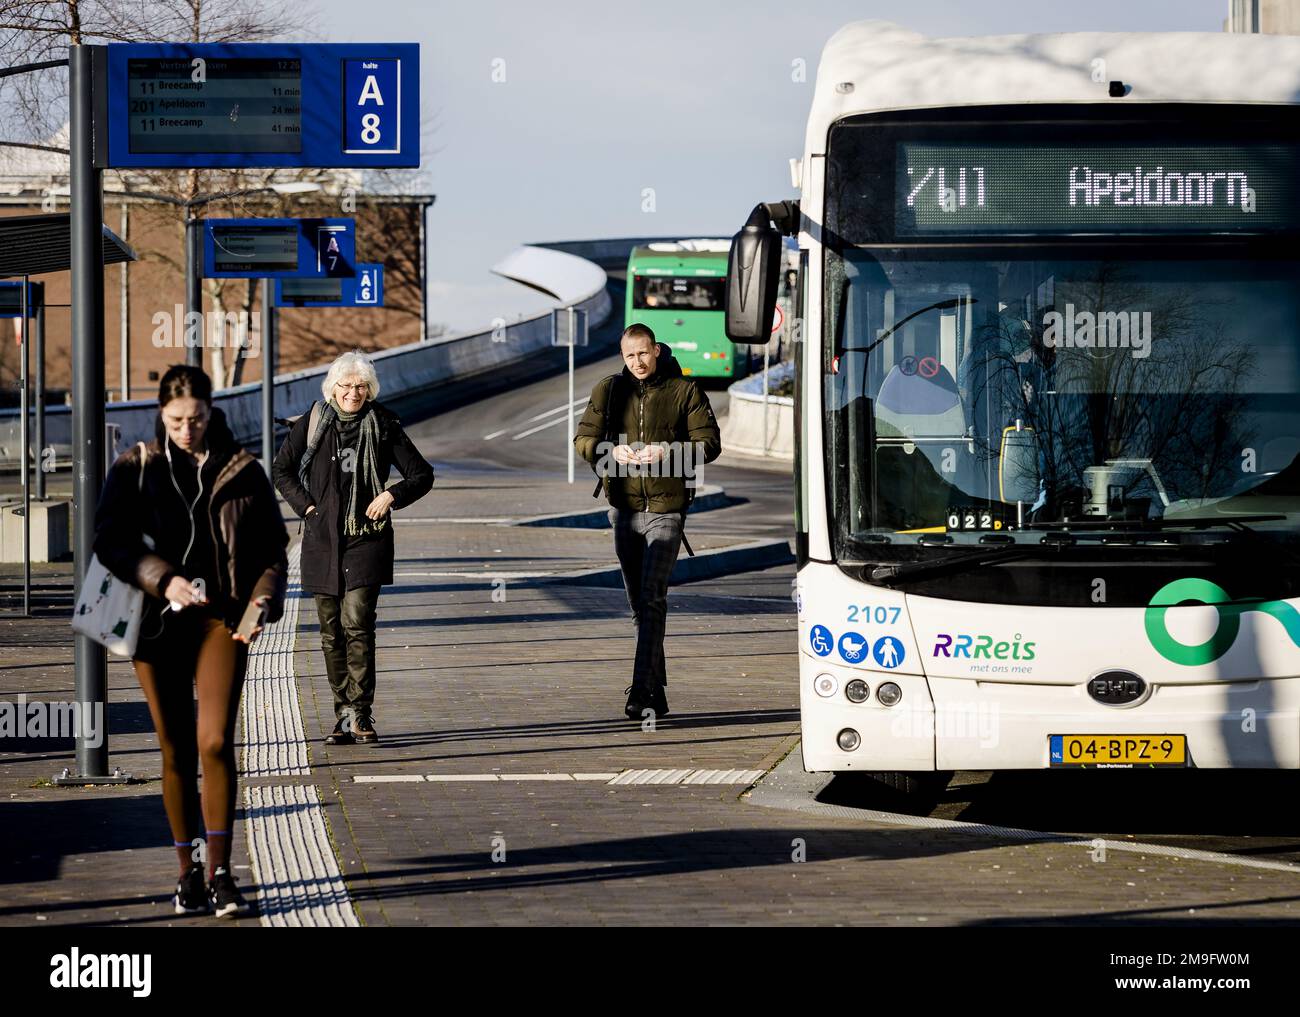 ZWOLLE - Reisende an der Bushaltestelle. Tausende von Busfahrern, Fahrern und Dirigenten im Regionalverkehr werden am Donnerstag und Freitag ihre Arbeit einstellen. Die Maßnahme schließt sich an eine Tarifvereinbarung zwischen Gewerkschaften und Arbeitgebern an. ANP SEM VAN DER WAL niederlande raus - belgien raus Stockfoto